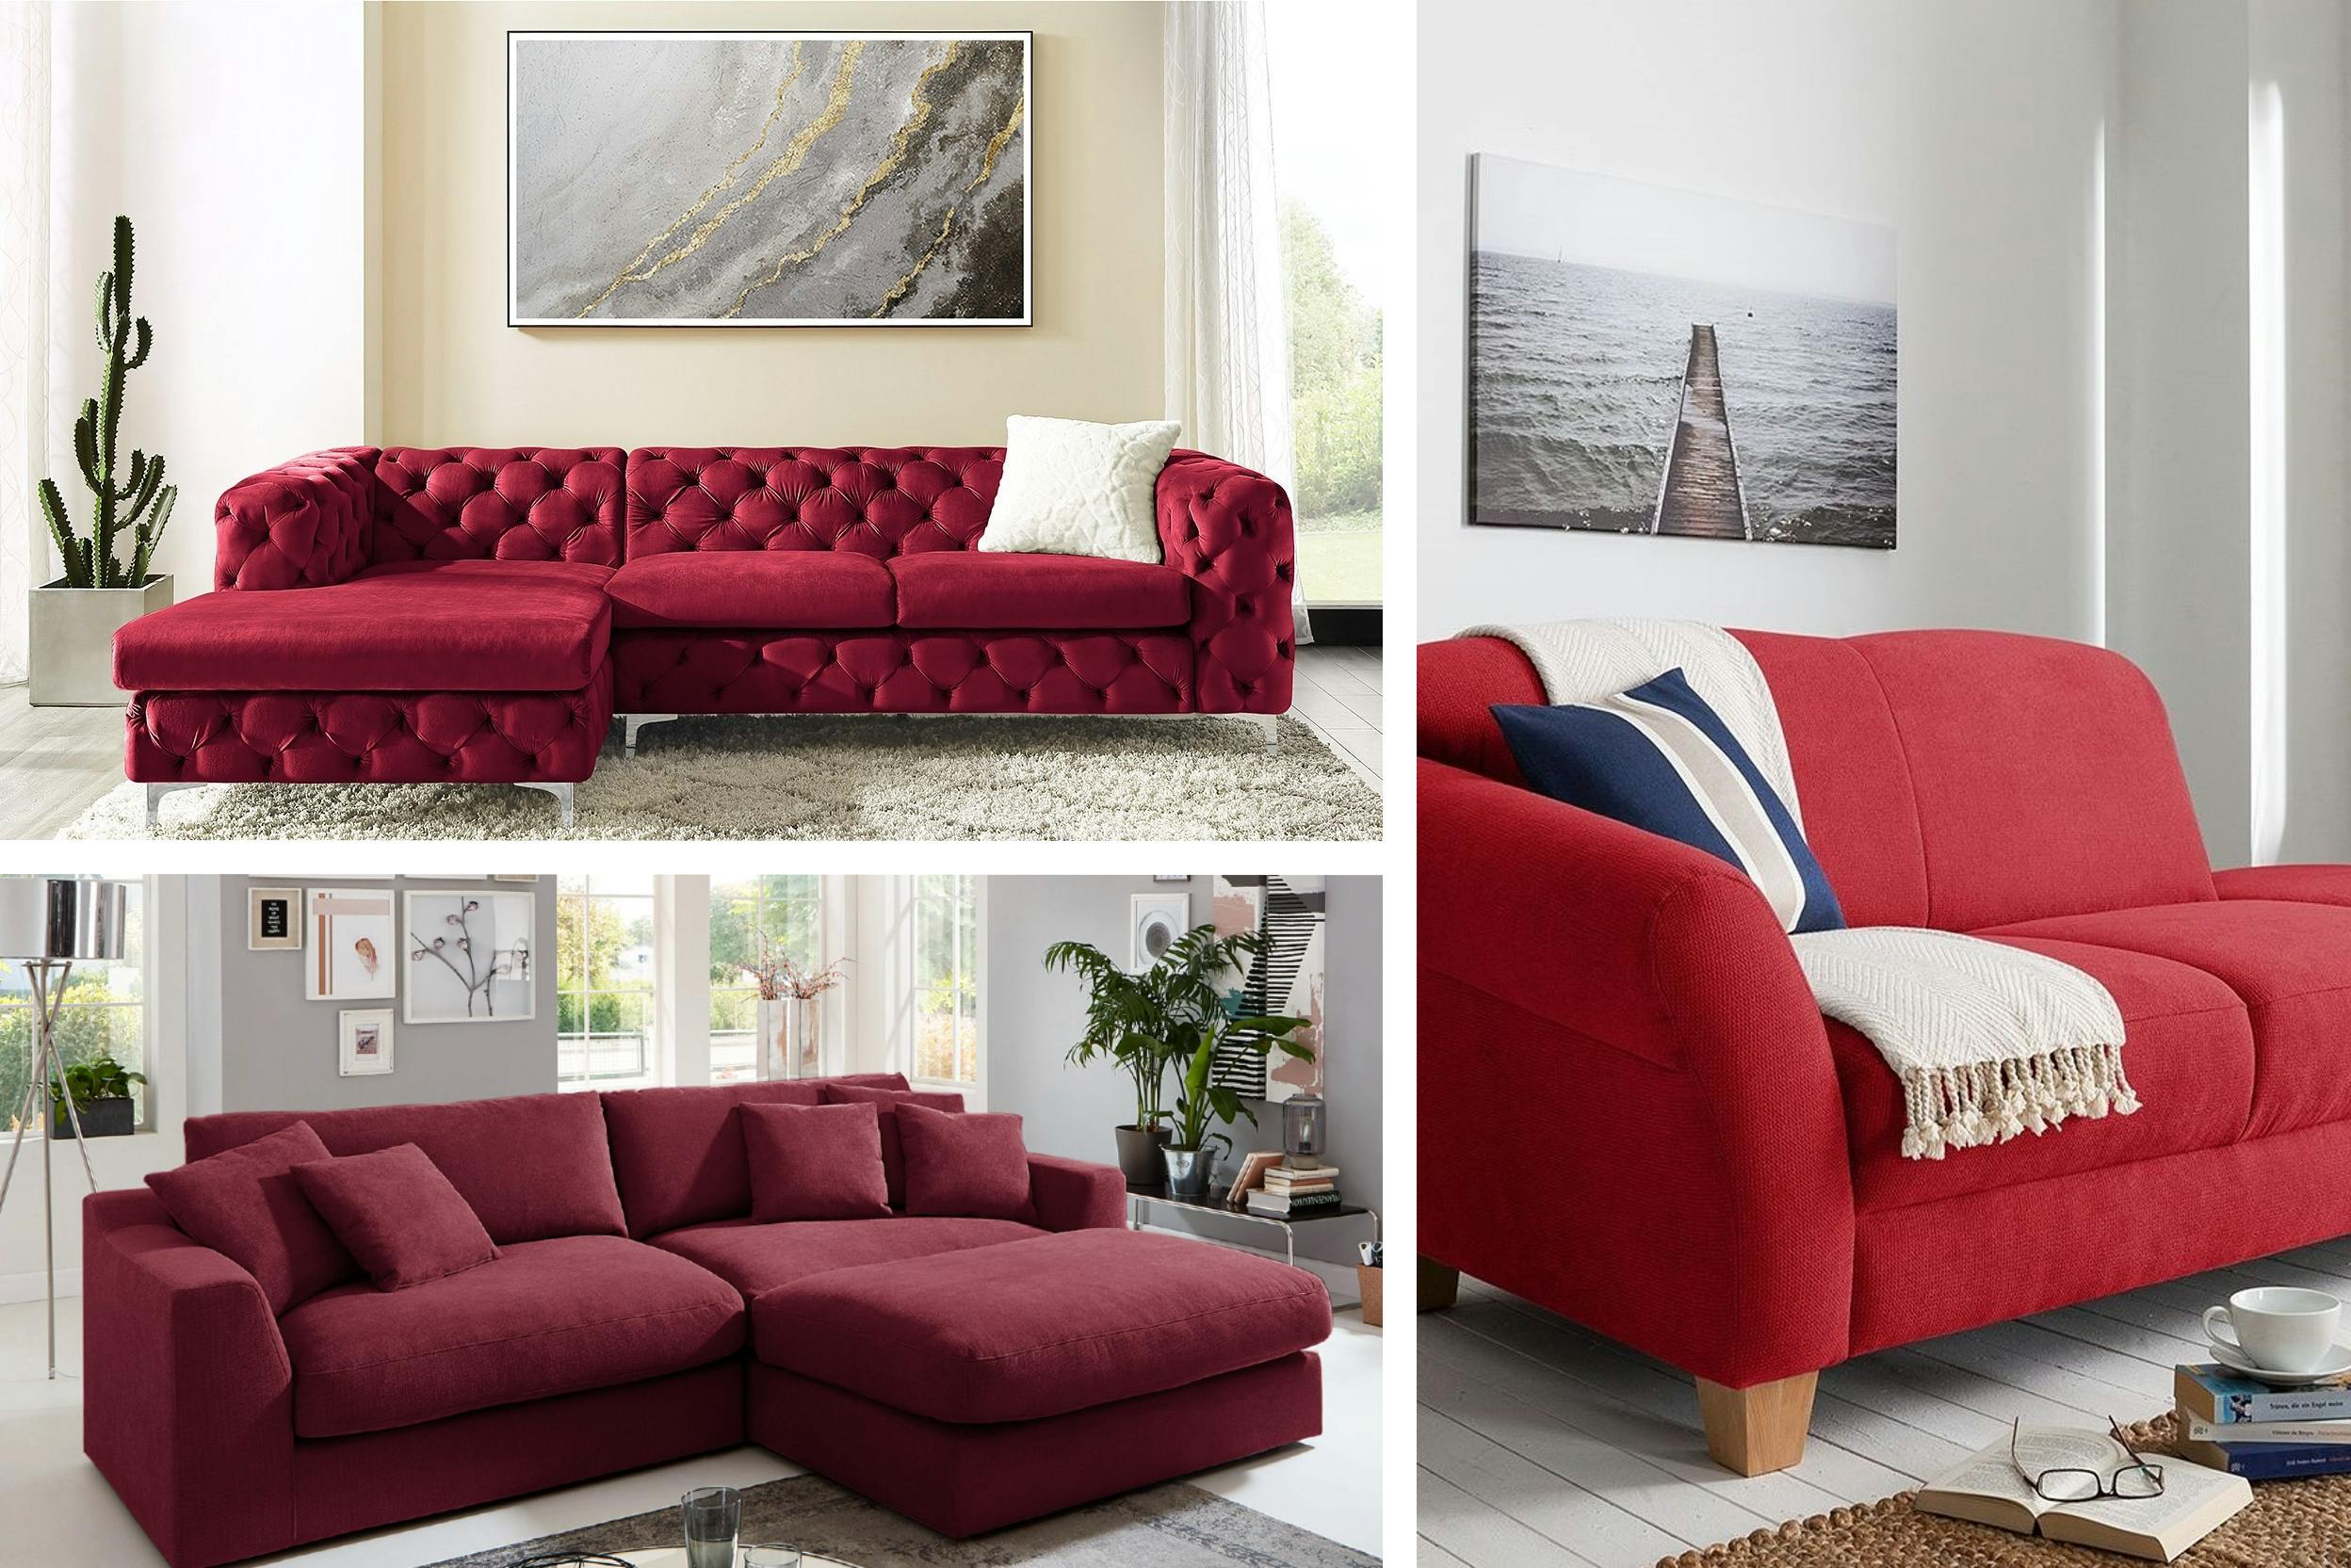 Tre modelli di divani angolari rossi: stile glamour (alto, sinistra), stile moderno (basso, sinistra), stile nordico (destra)